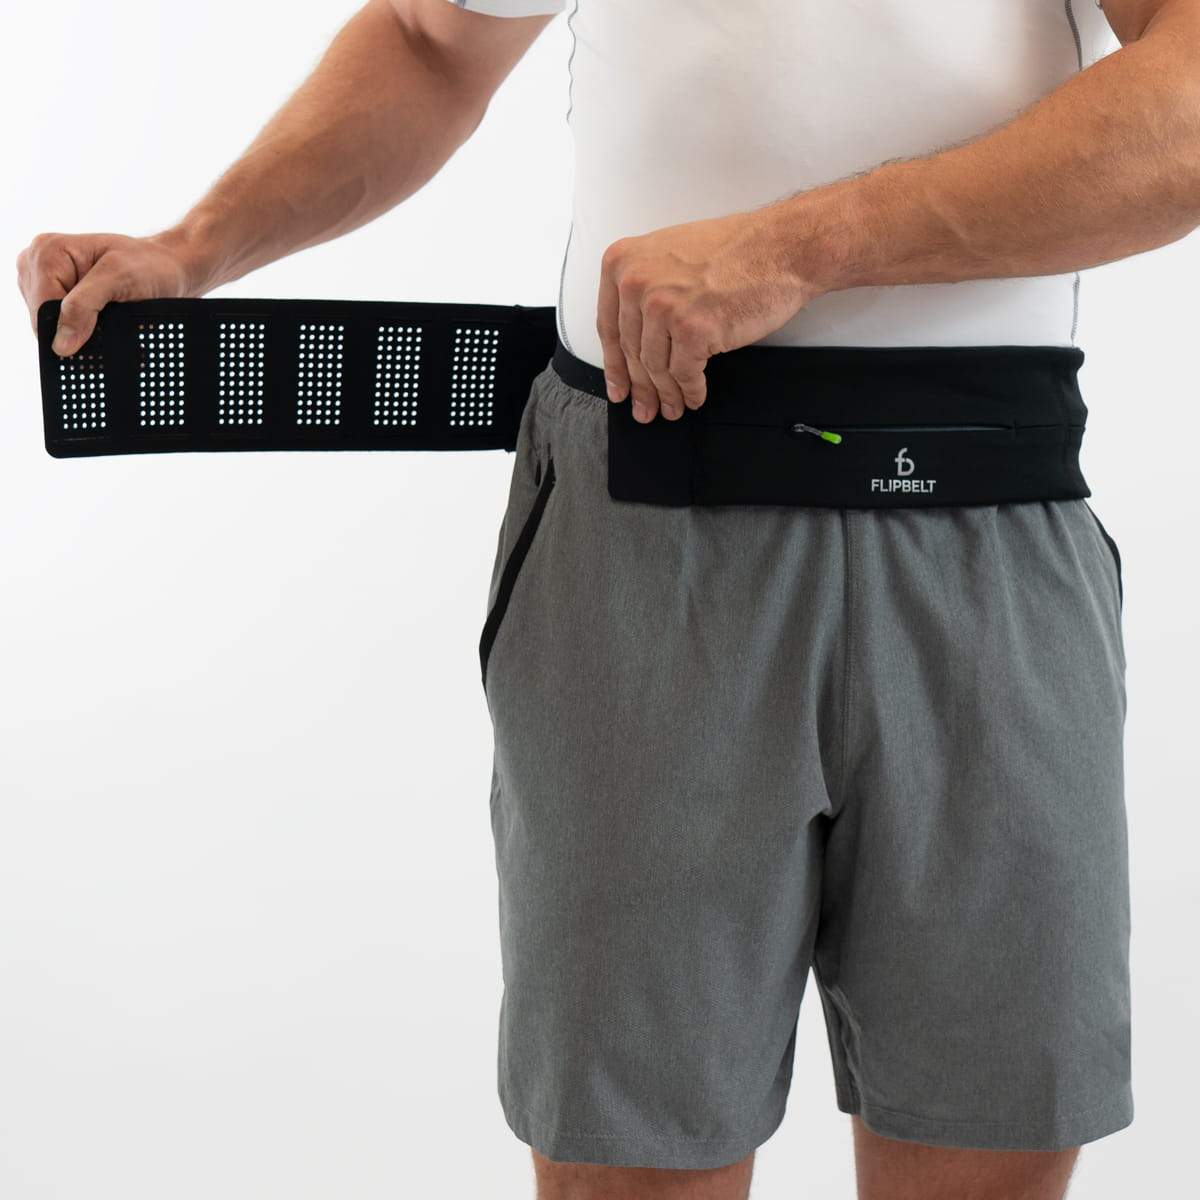 FlipBelt Zipper Running Belt  FlipBelt Zipper Edition - The Natural  Athletes Clinic